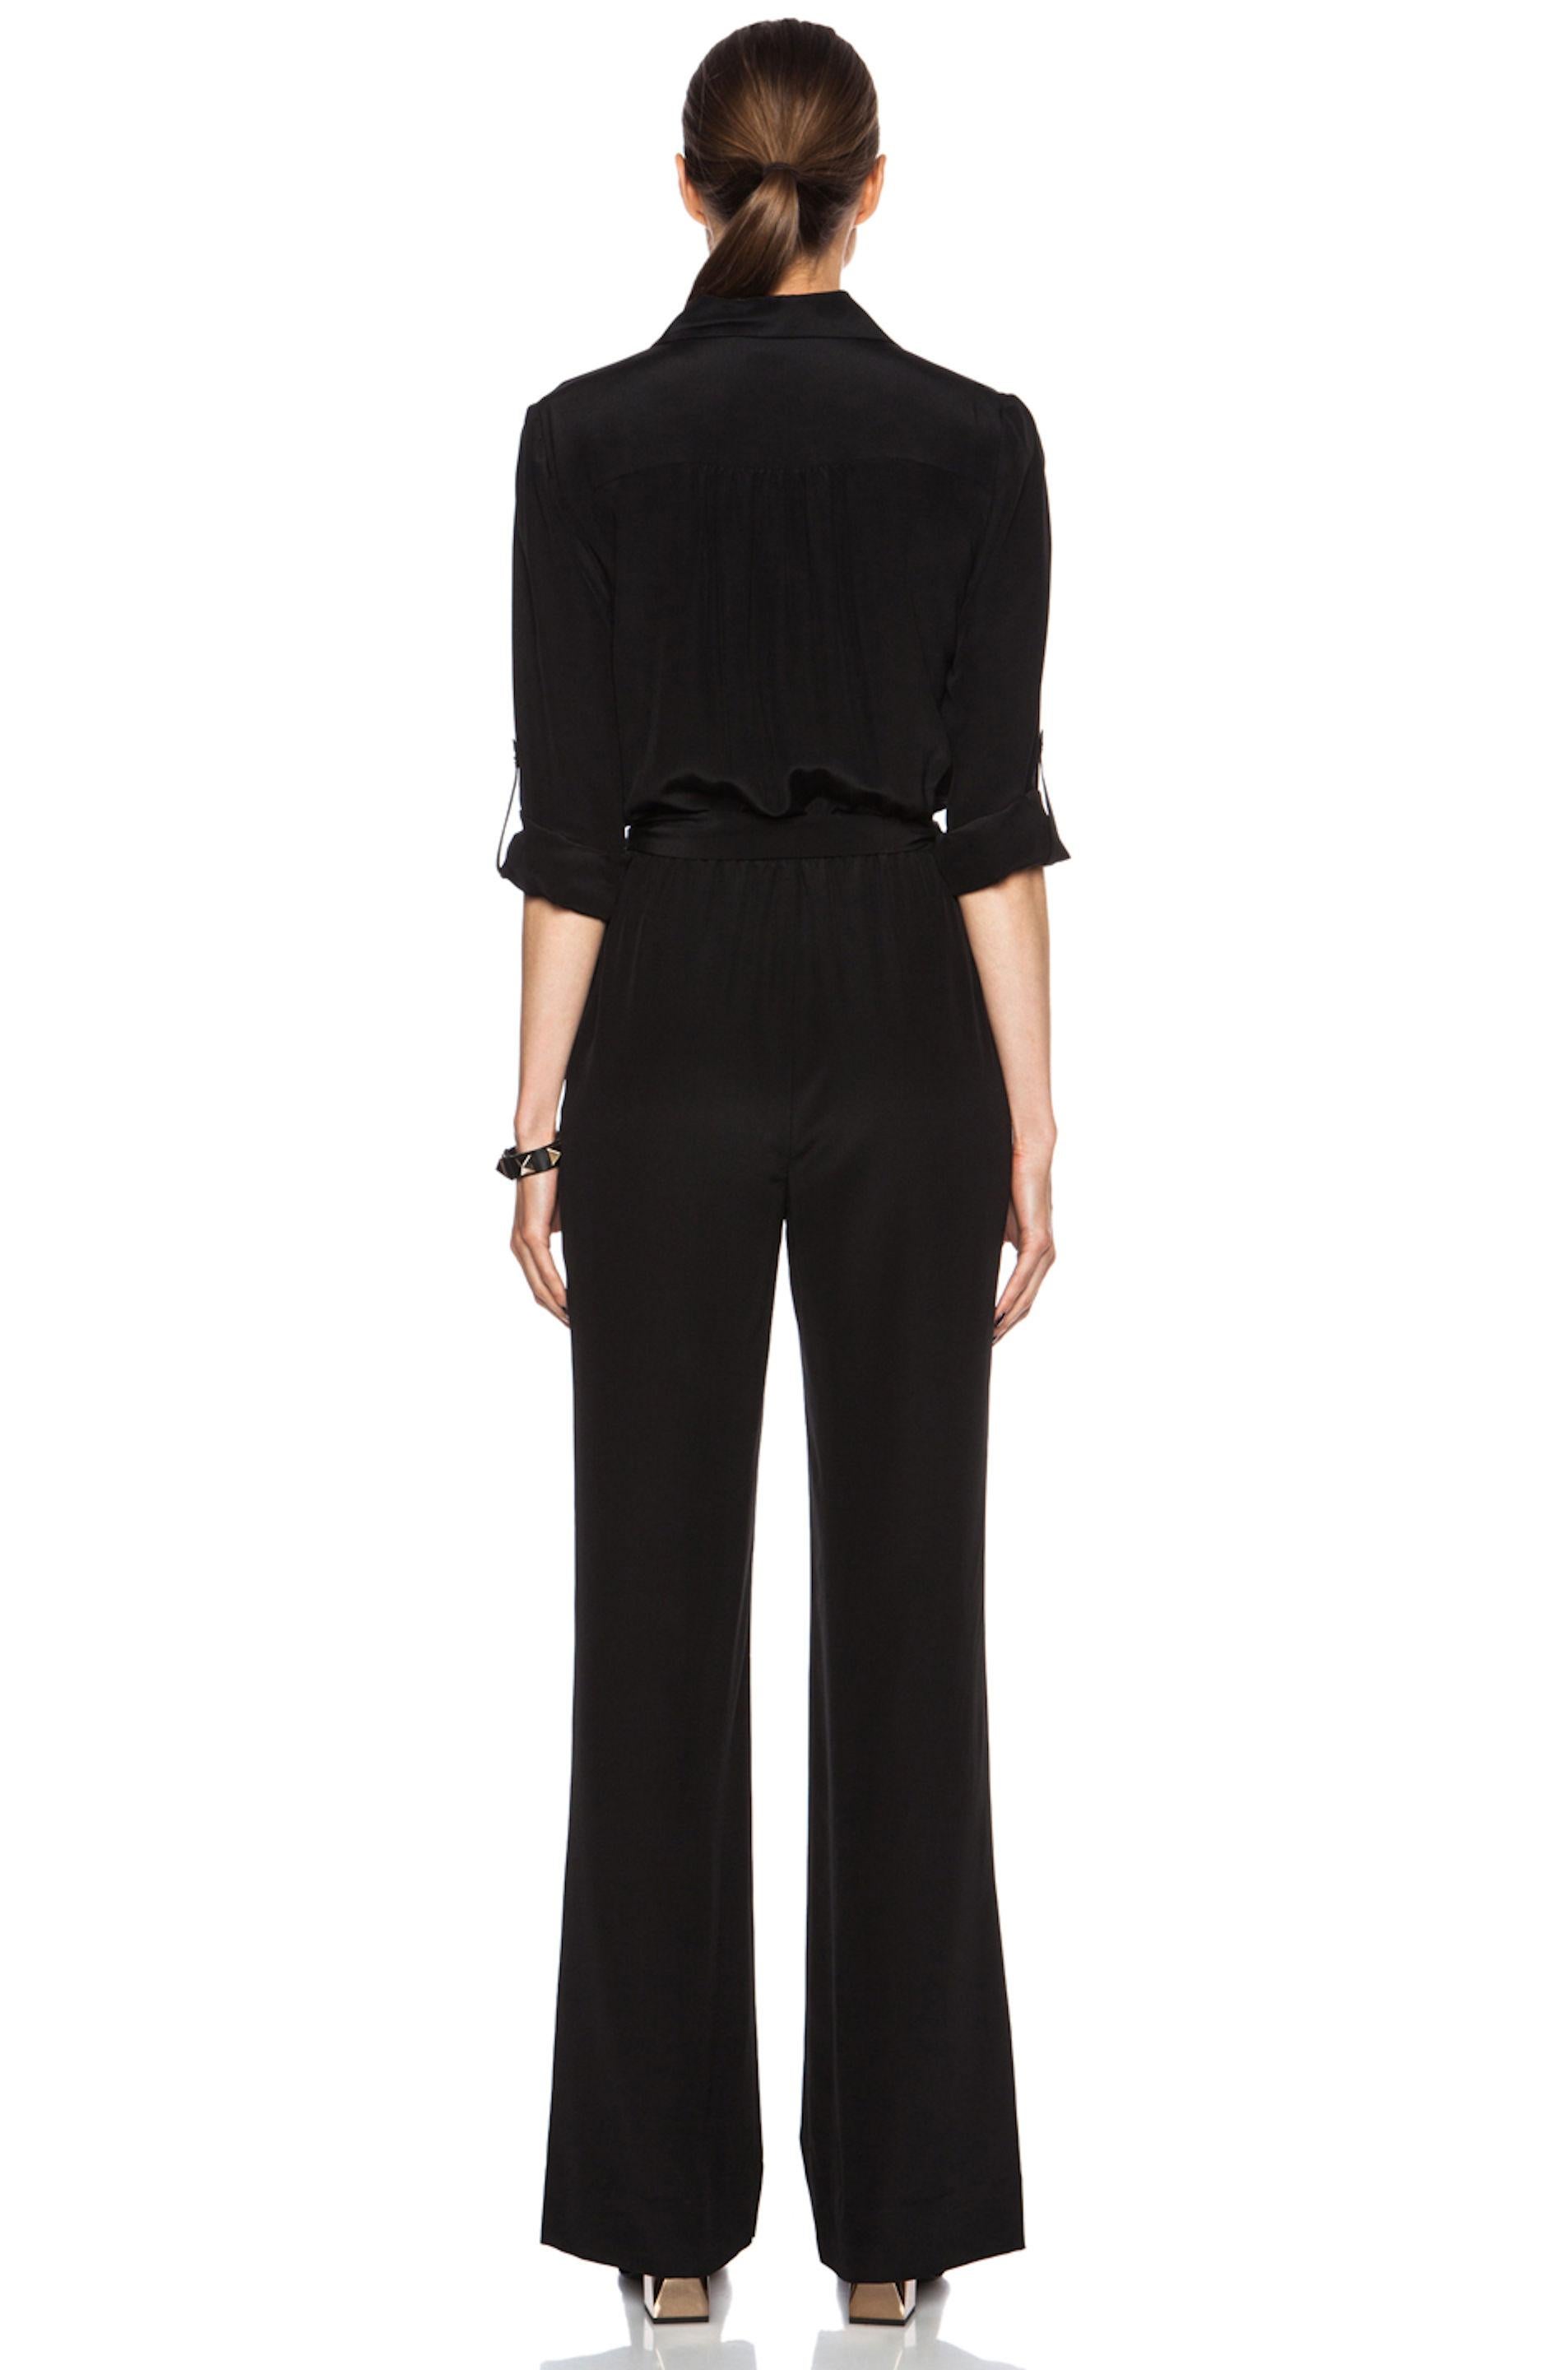 NEW DVF Diane von Furstenberg Black Silk Jumpsuit Overall Size US8 2